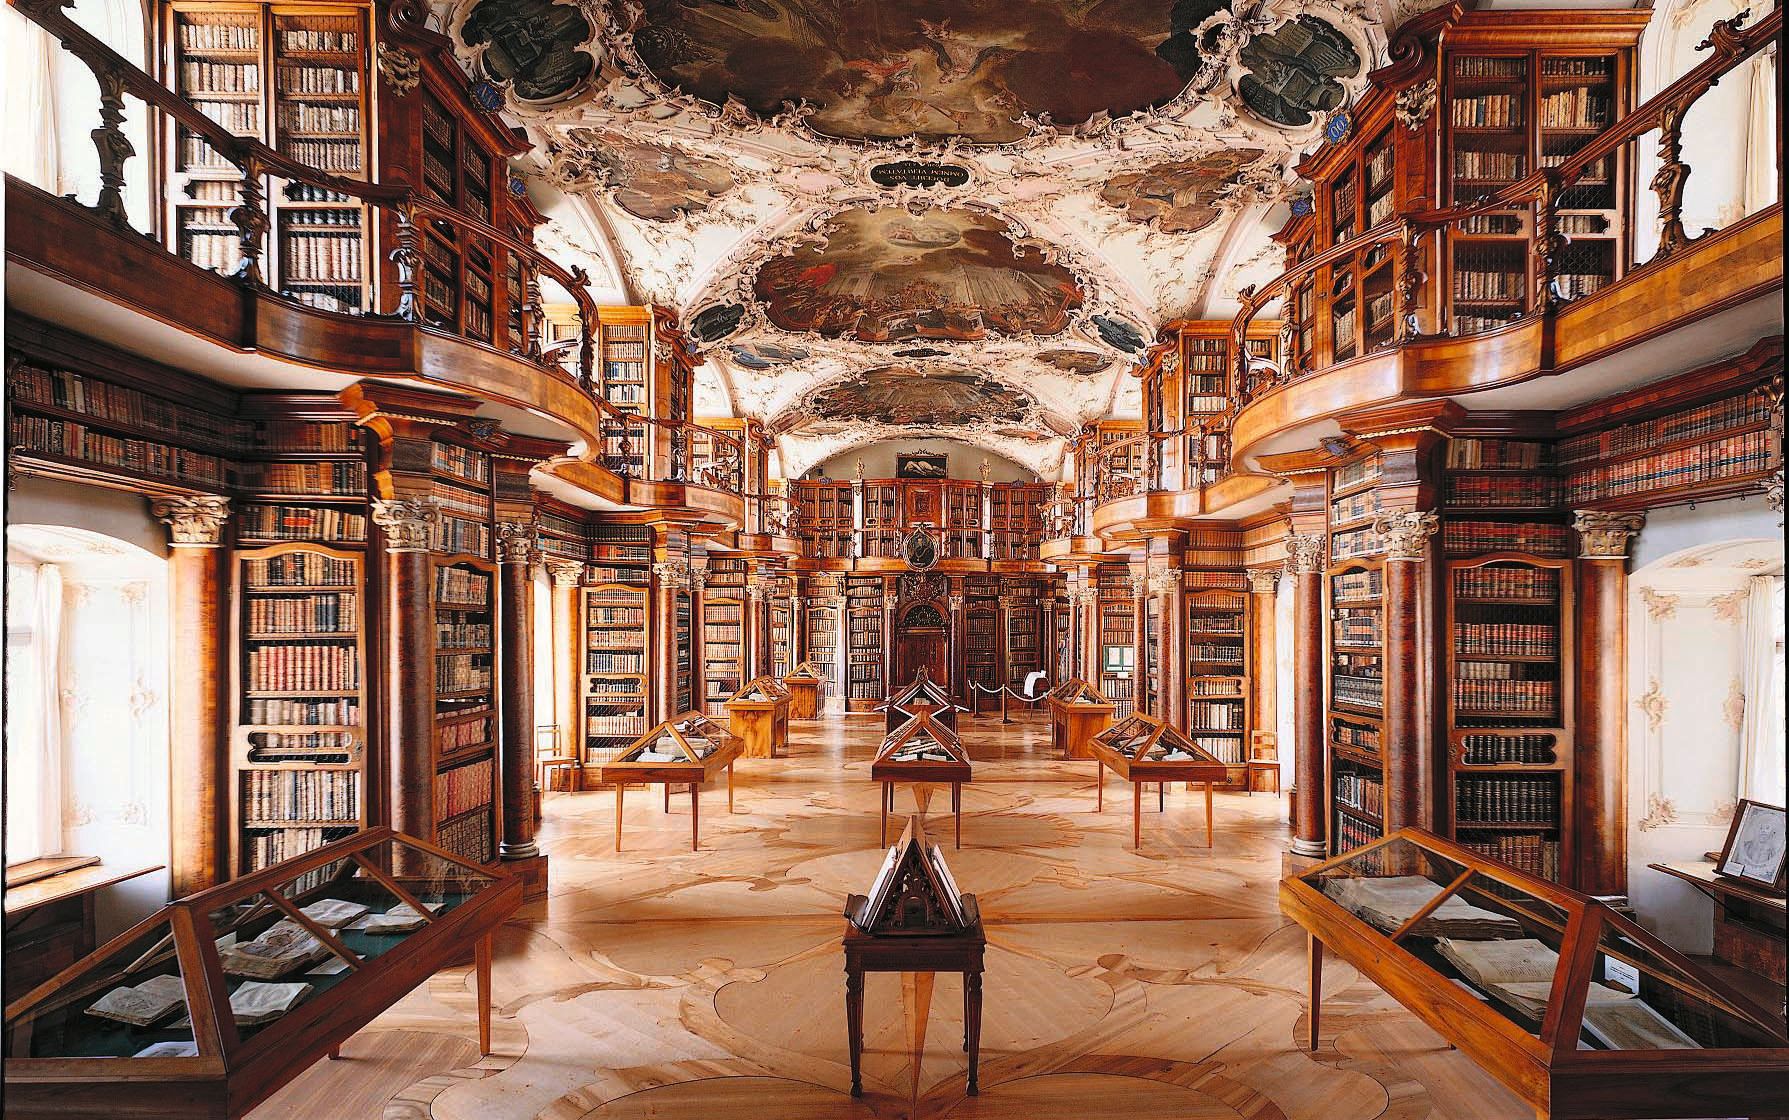 Stiftsbibliothek St. Gallen, A-Objekt im Kulturgüterschutzinventar, Unesco-Weltkulturerbe und Anwärterin für verstärkten Schutz